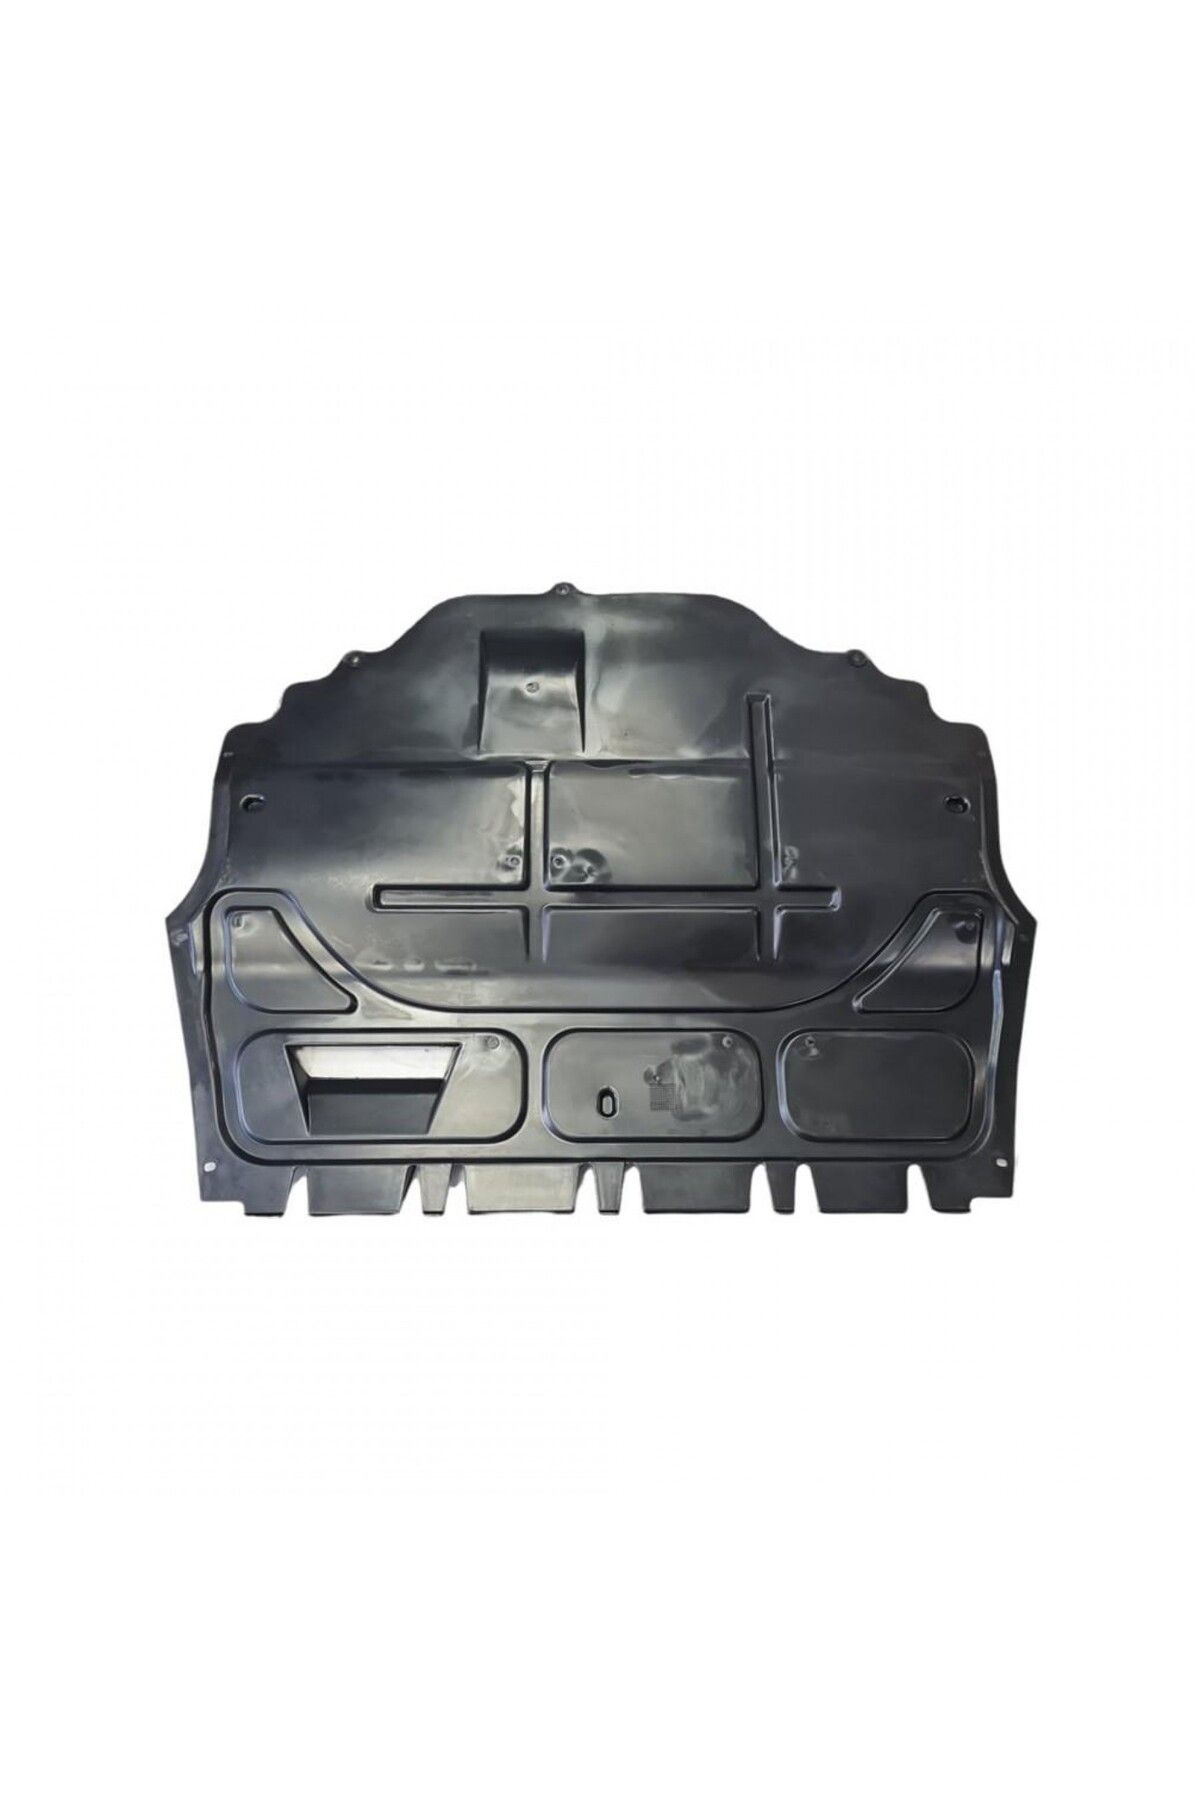 fbm Seat Toledo 2013-2019 Uyumlu Motor Alt Koruma Plastiği Karter Muhafazası